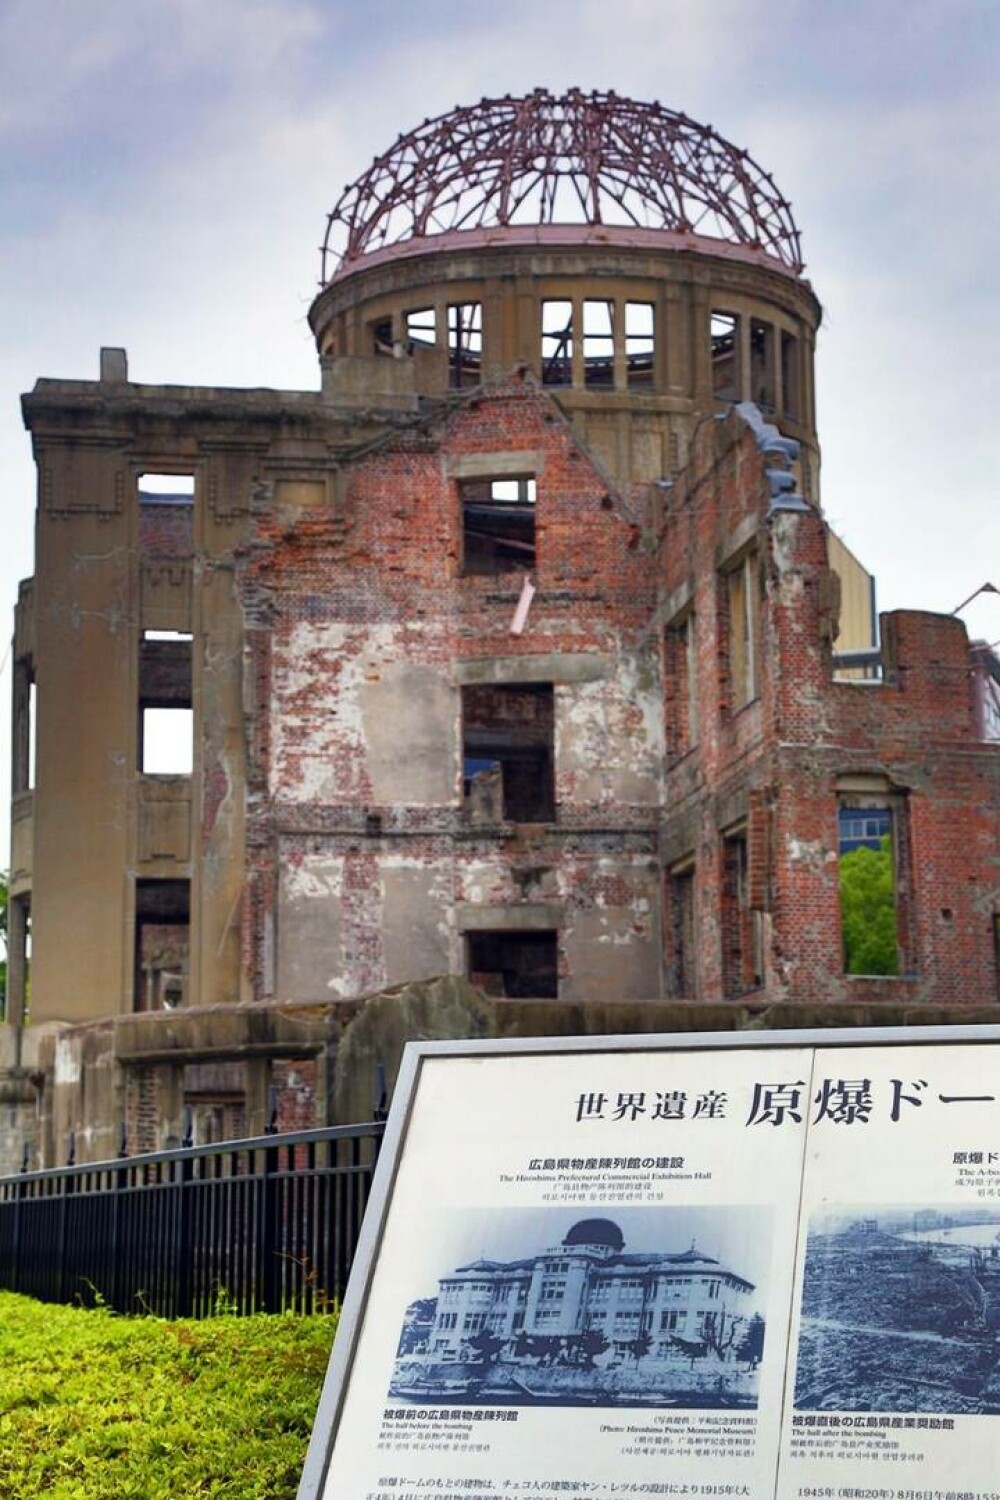 78 de ani de la bombardamentele atomice de la Hiroshima. Primarul îndeamnă eliminarea completă a armelor nucleare. FOTO - Imaginea 13